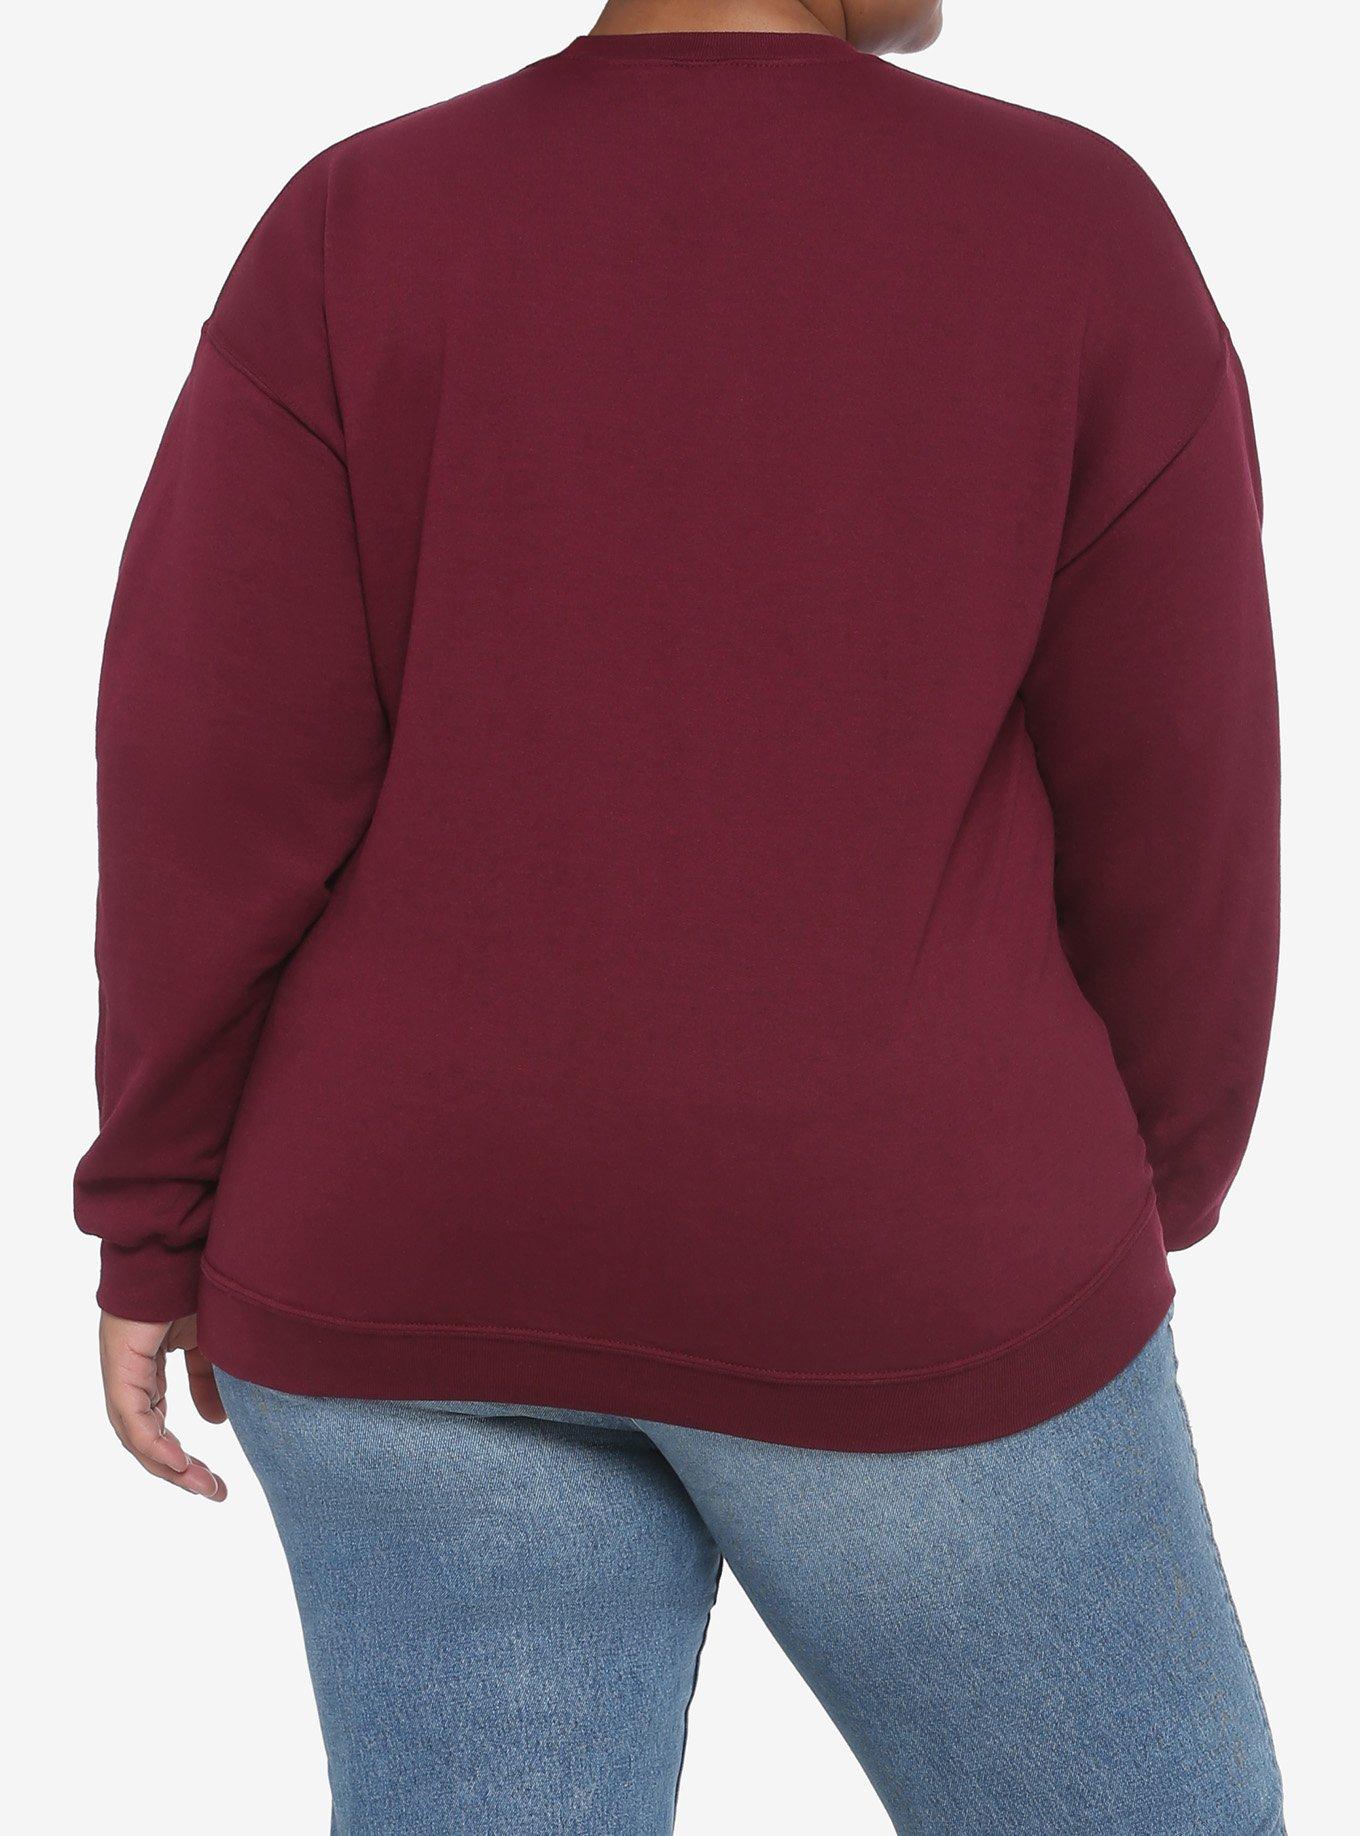 Beetlejuice Handbook For The Recently Deceased Maroon Girls Sweatshirt Plus Size, MULTI, alternate